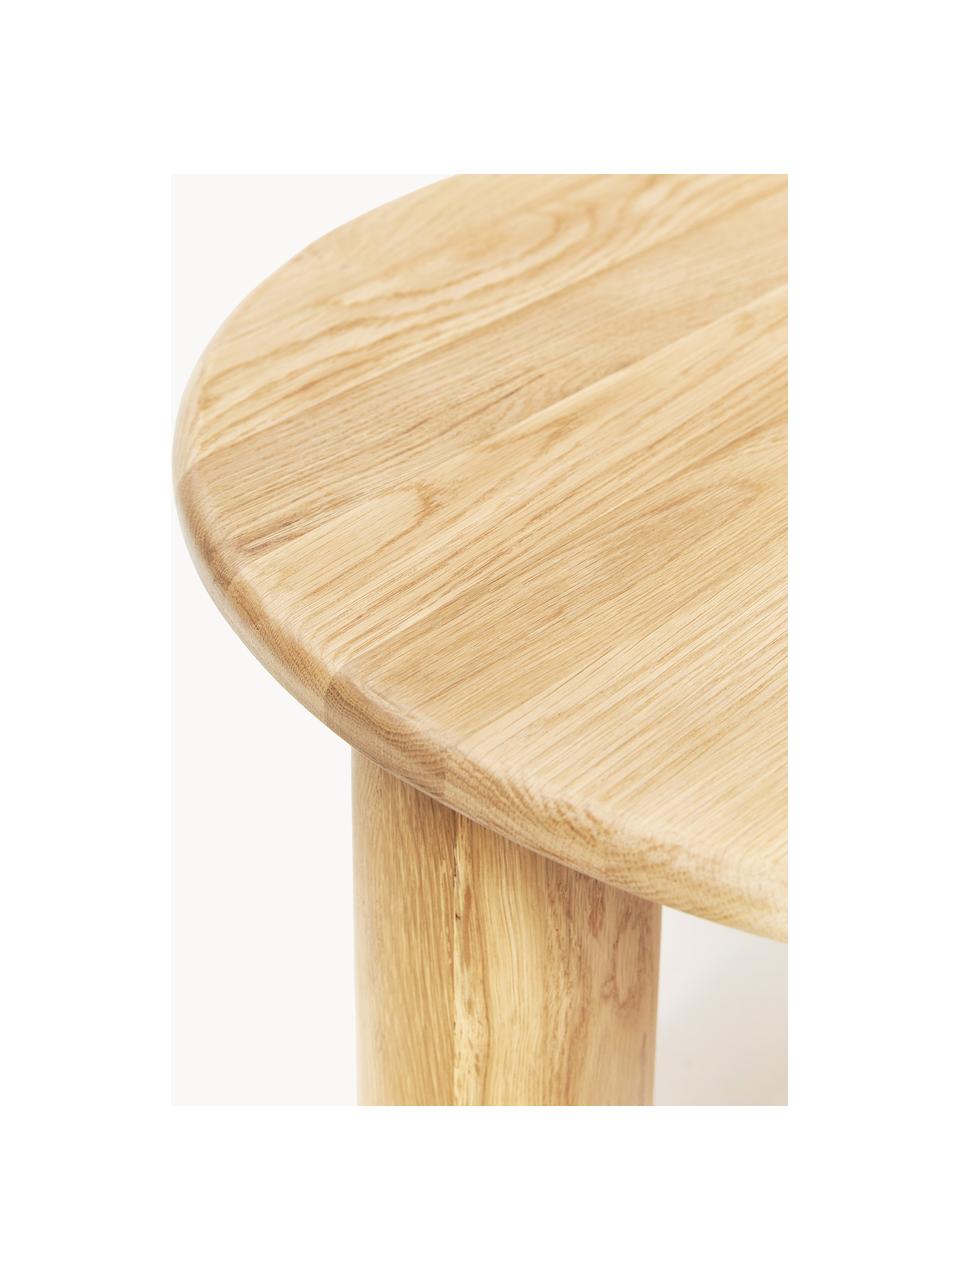 Kulatý dubový konferenční stolek Didi, Masivní dubové dřevo, olejované

Tento produkt je vyroben z udržitelných zdrojů dřeva s certifikací FSC®., Olejované dubové dřevo, Ø 80 cm